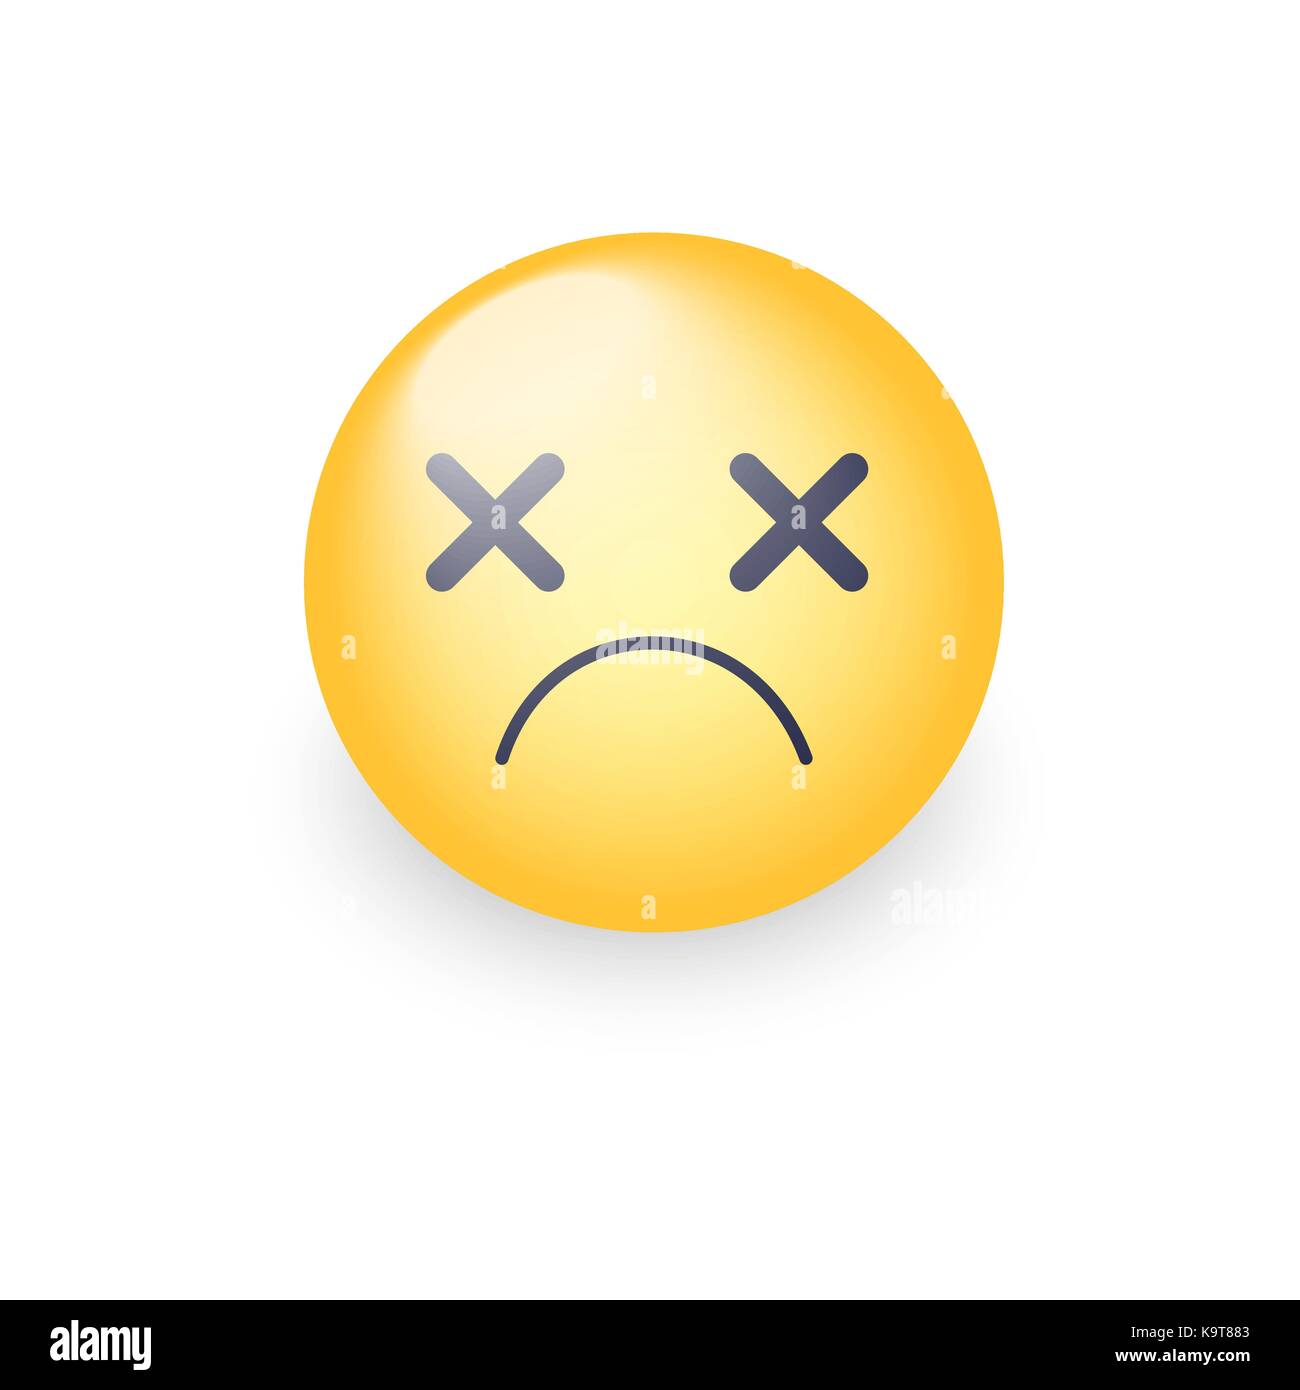 Dizzy emoji face. Cross eyes emoticon vector icon. Sad cartoon smiley Stock  Vector Image & Art - Alamy